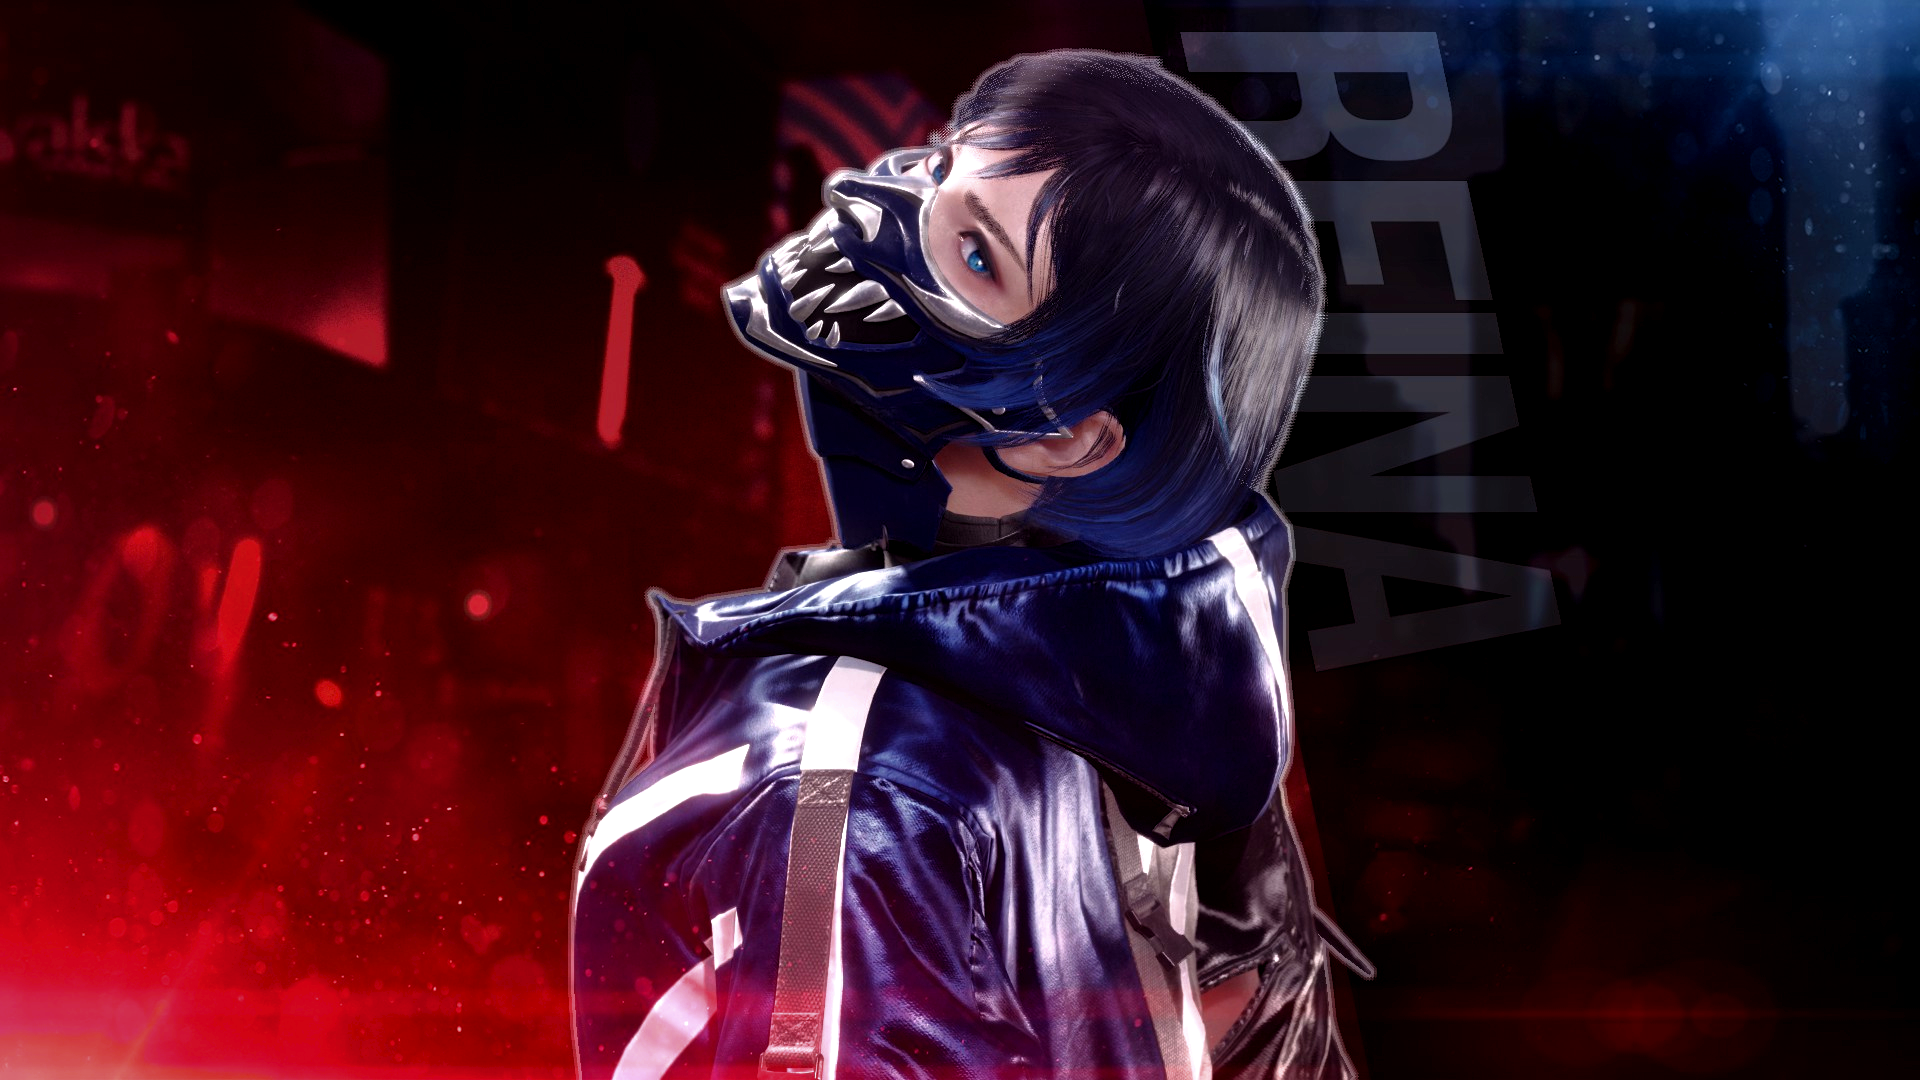 Reina Mishima Tekken Video Game Characters 1920x1080